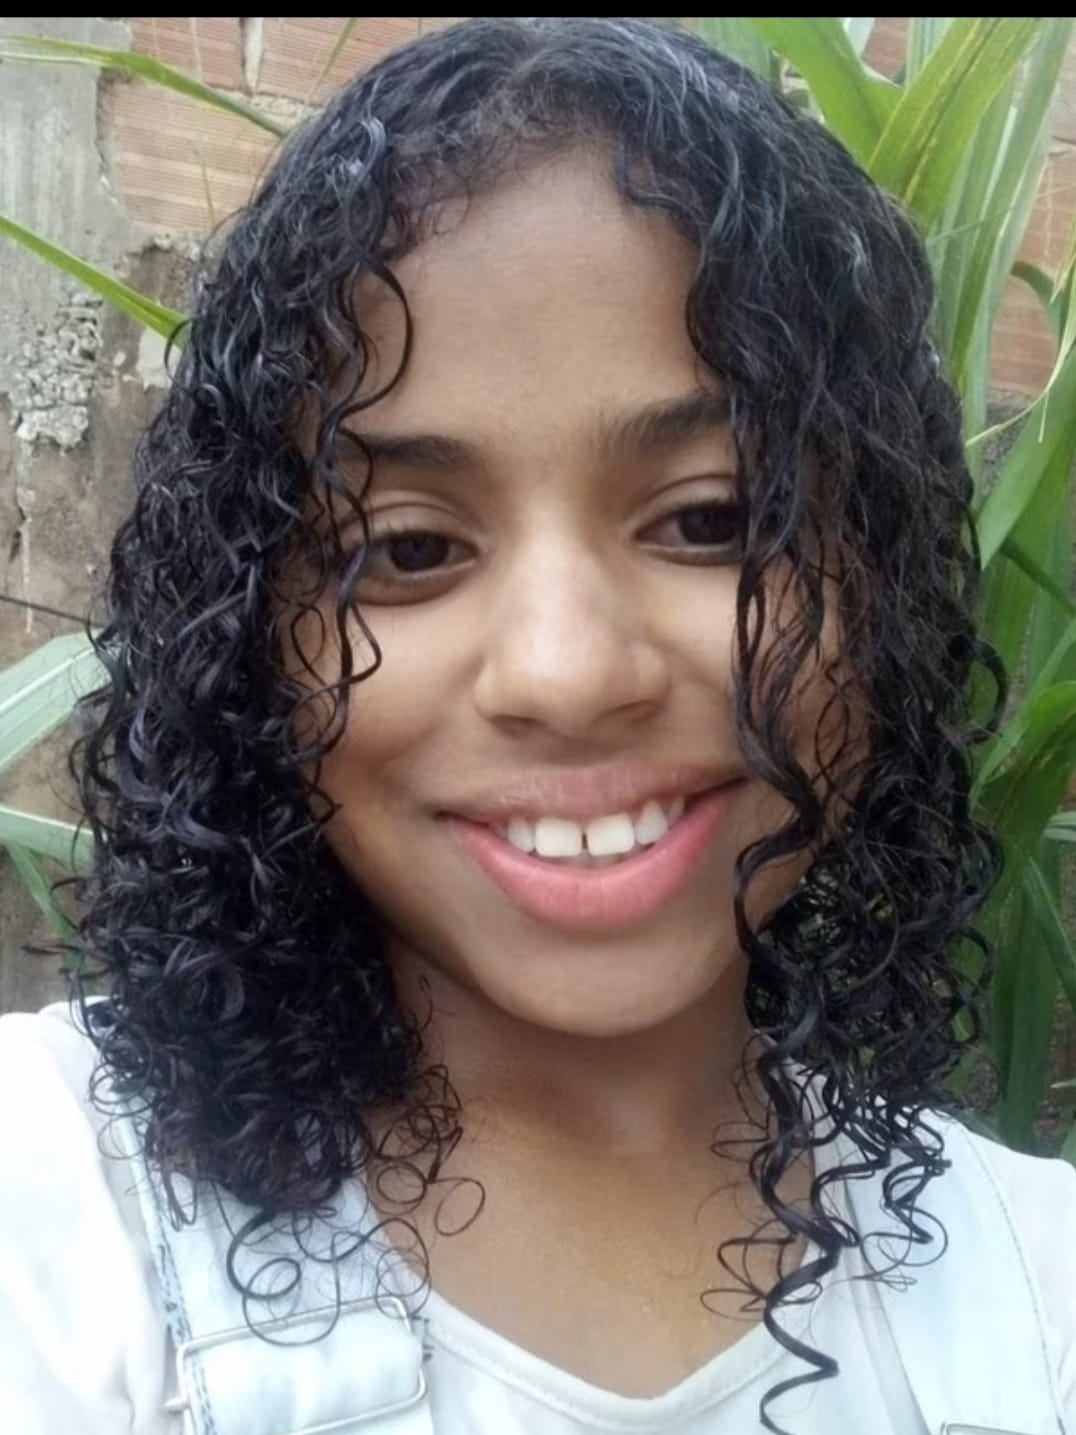 Jovem de 12 anos é encontrada morta em Belo Horizonte (Foto: Divulgação)